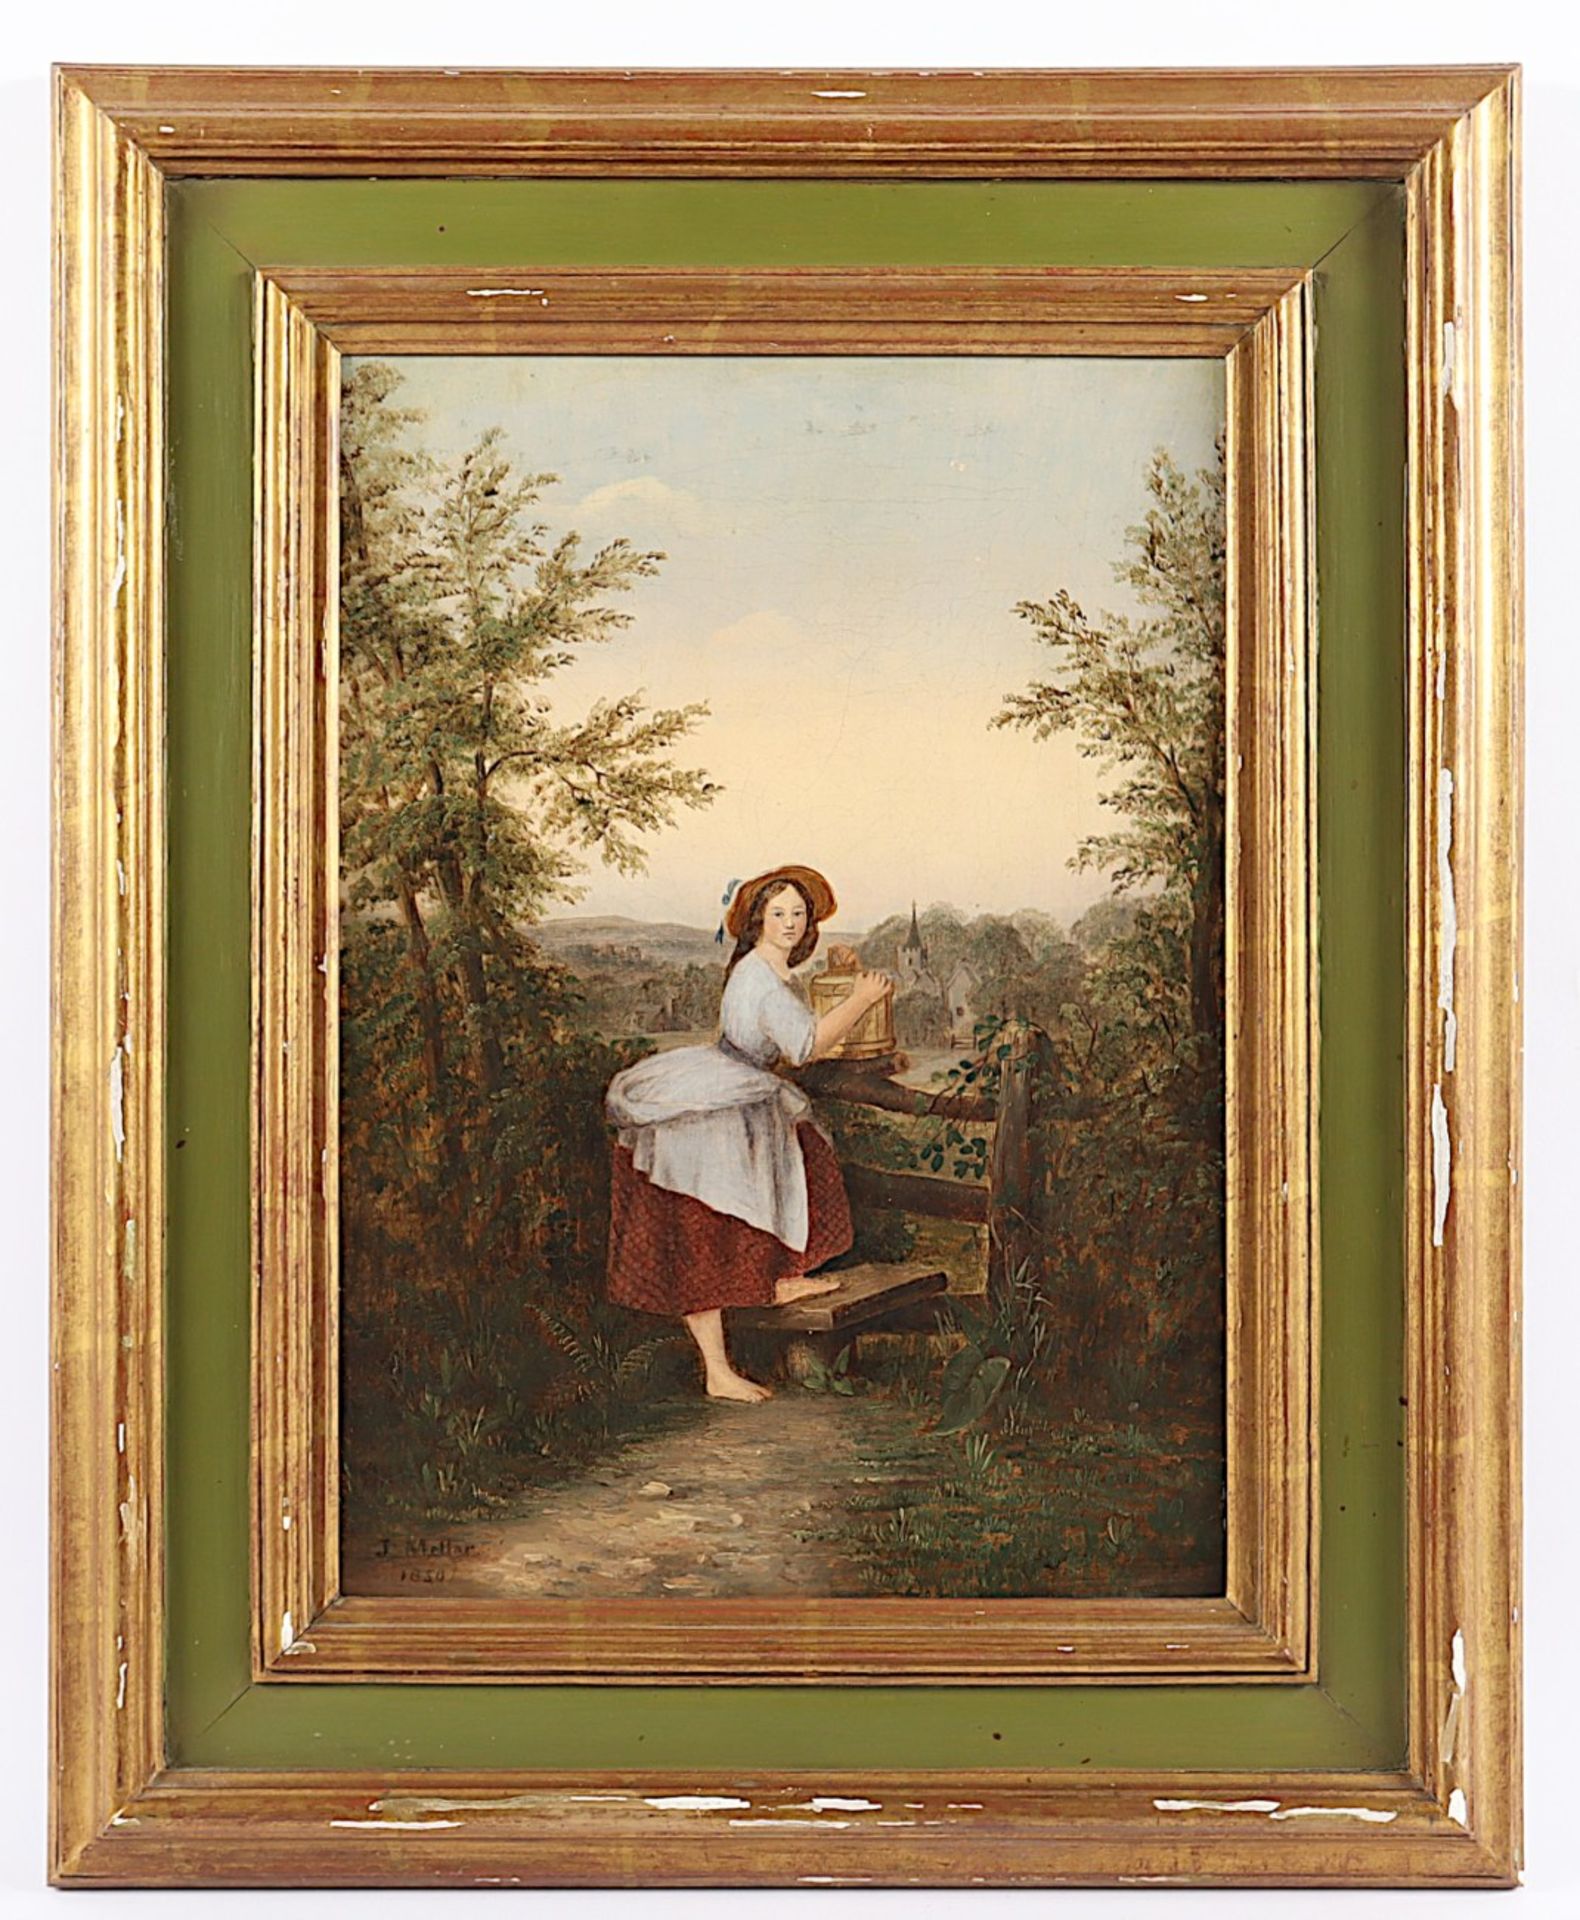 MELLAR, J. (Maler des 19.Jh.) "Junge Wasserträgerin vor einer Landschaft", Öl/Lwd., 39 x 27, doubli - Image 2 of 4